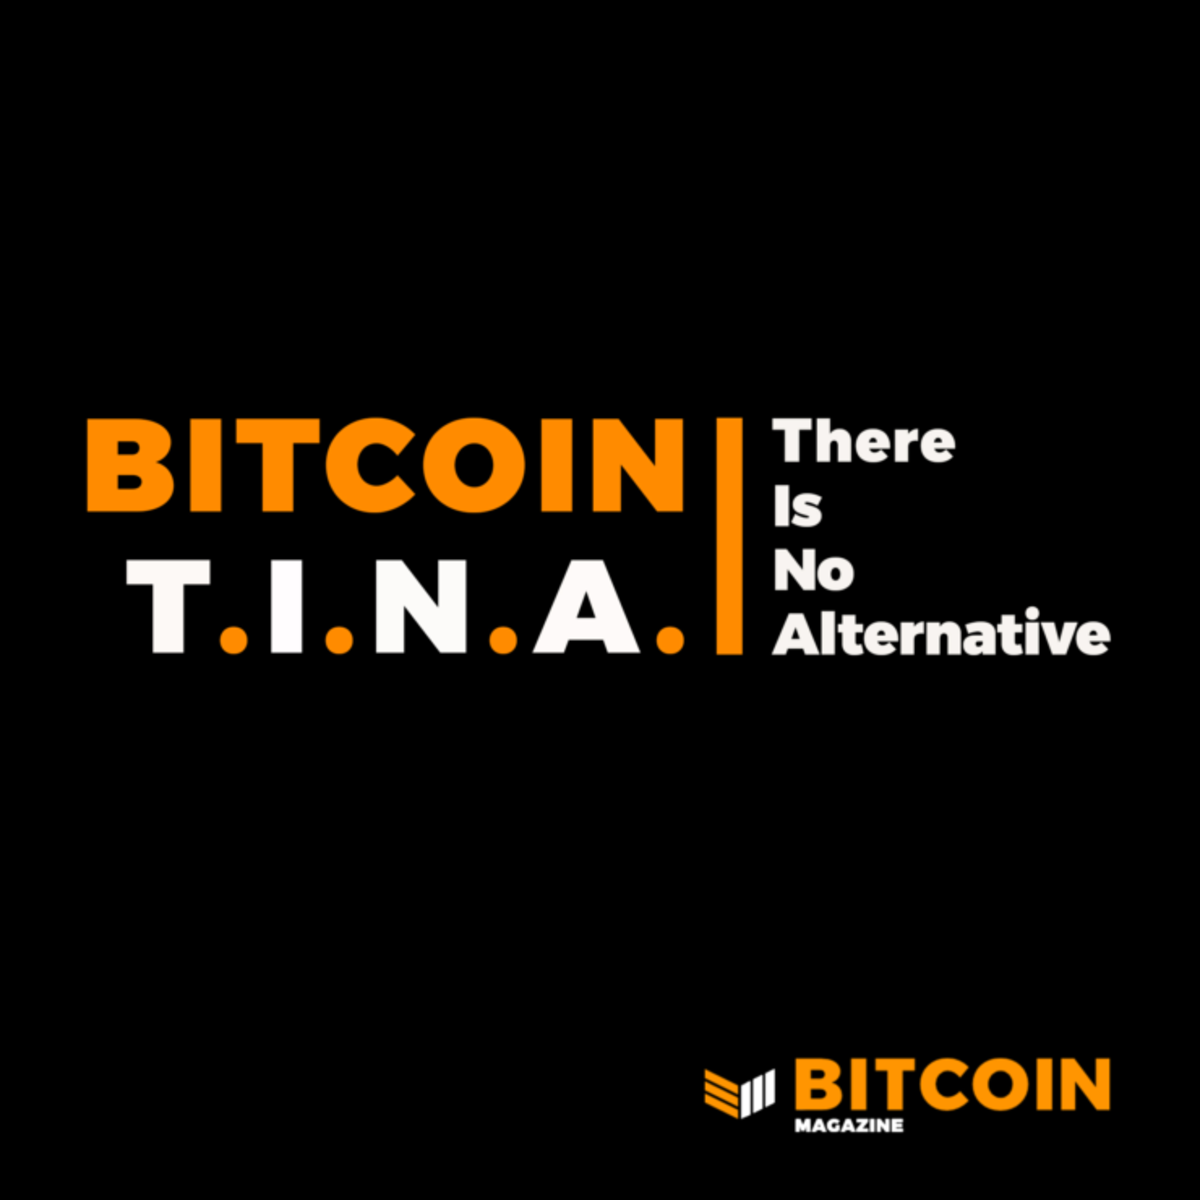 bitcoin tina: there is no alternative